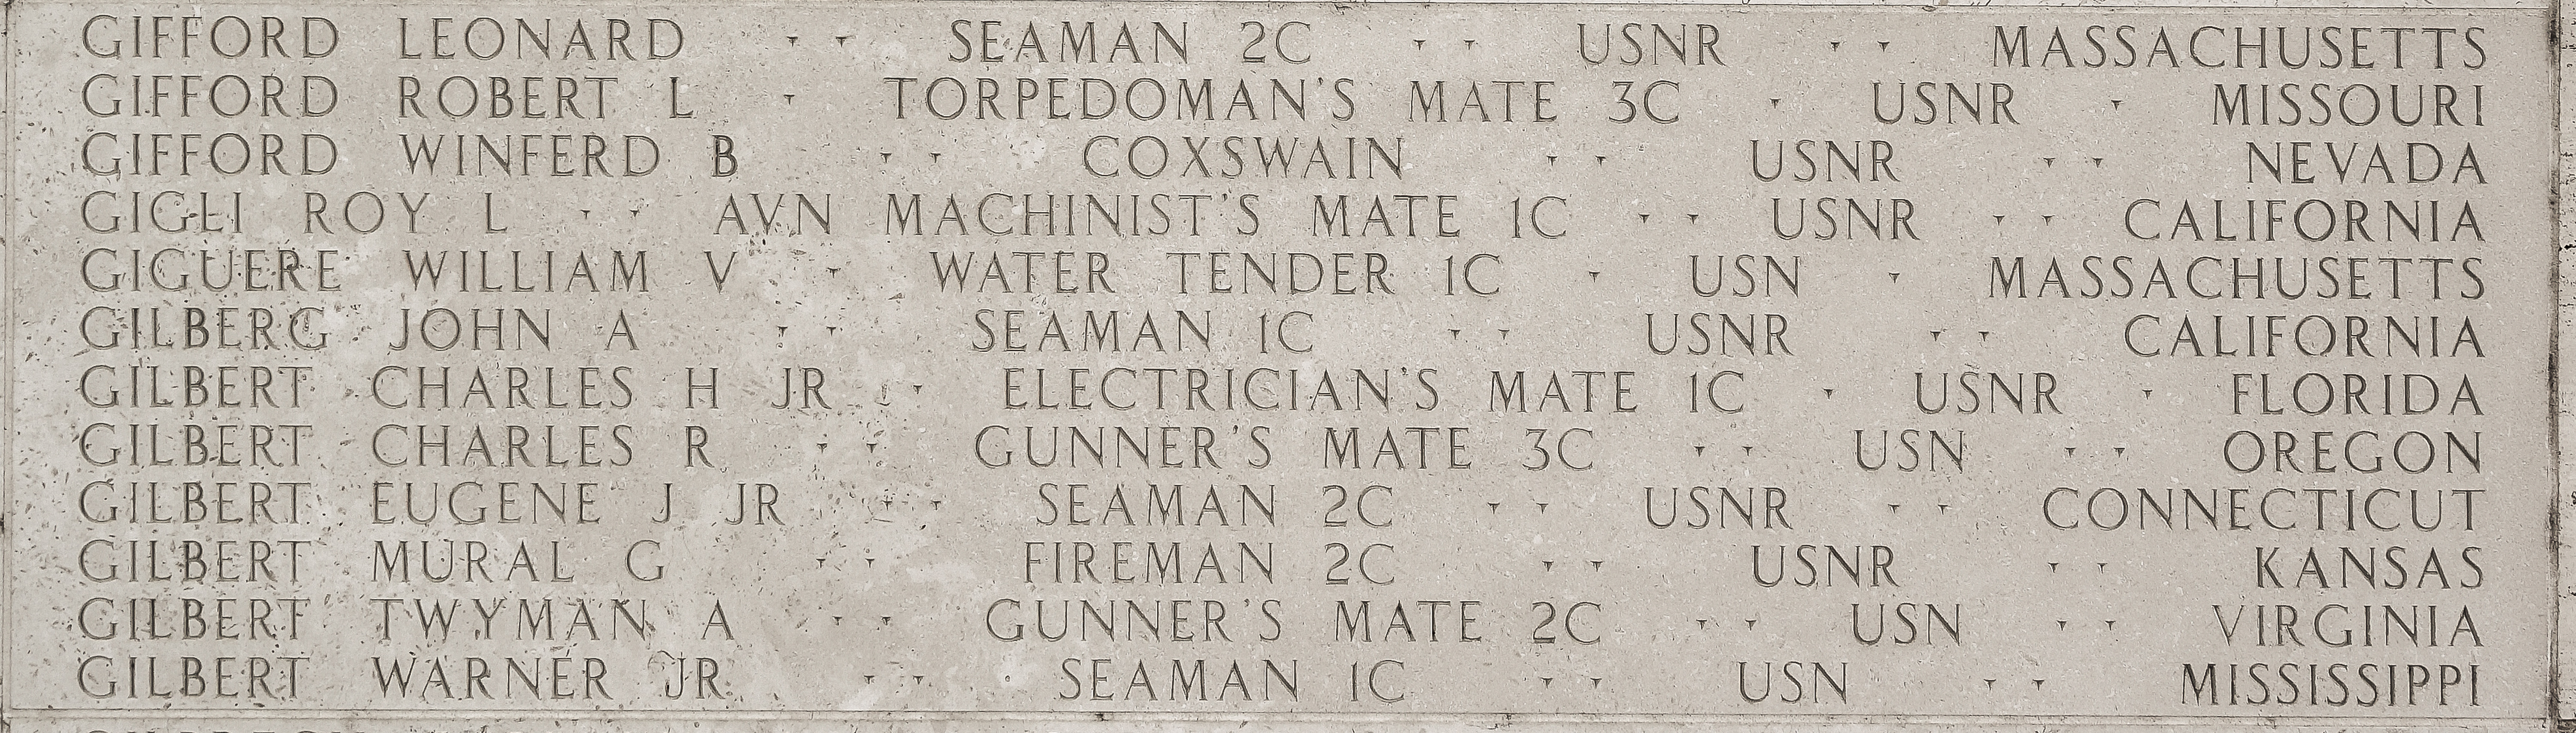 Twyman A. Gilbert, Gunner's Mate Second Class